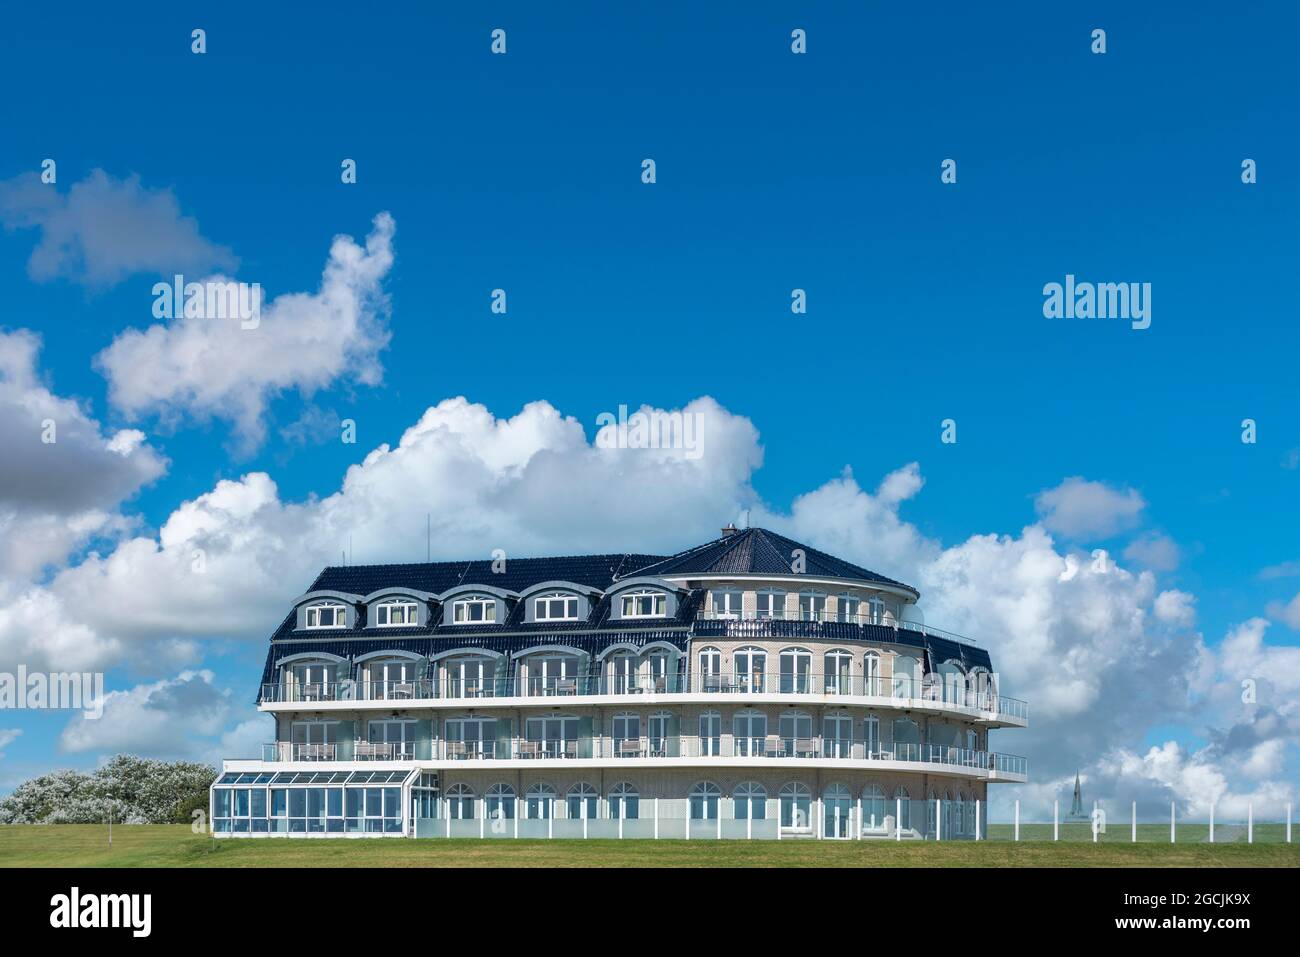 Ehemaliges Hotel Deichgraf, heute der Upleven als Zentrum für Entspannung, Meditation und Yoga, Wremen, Niedersachsen, Deutschland, Europa Stockfoto